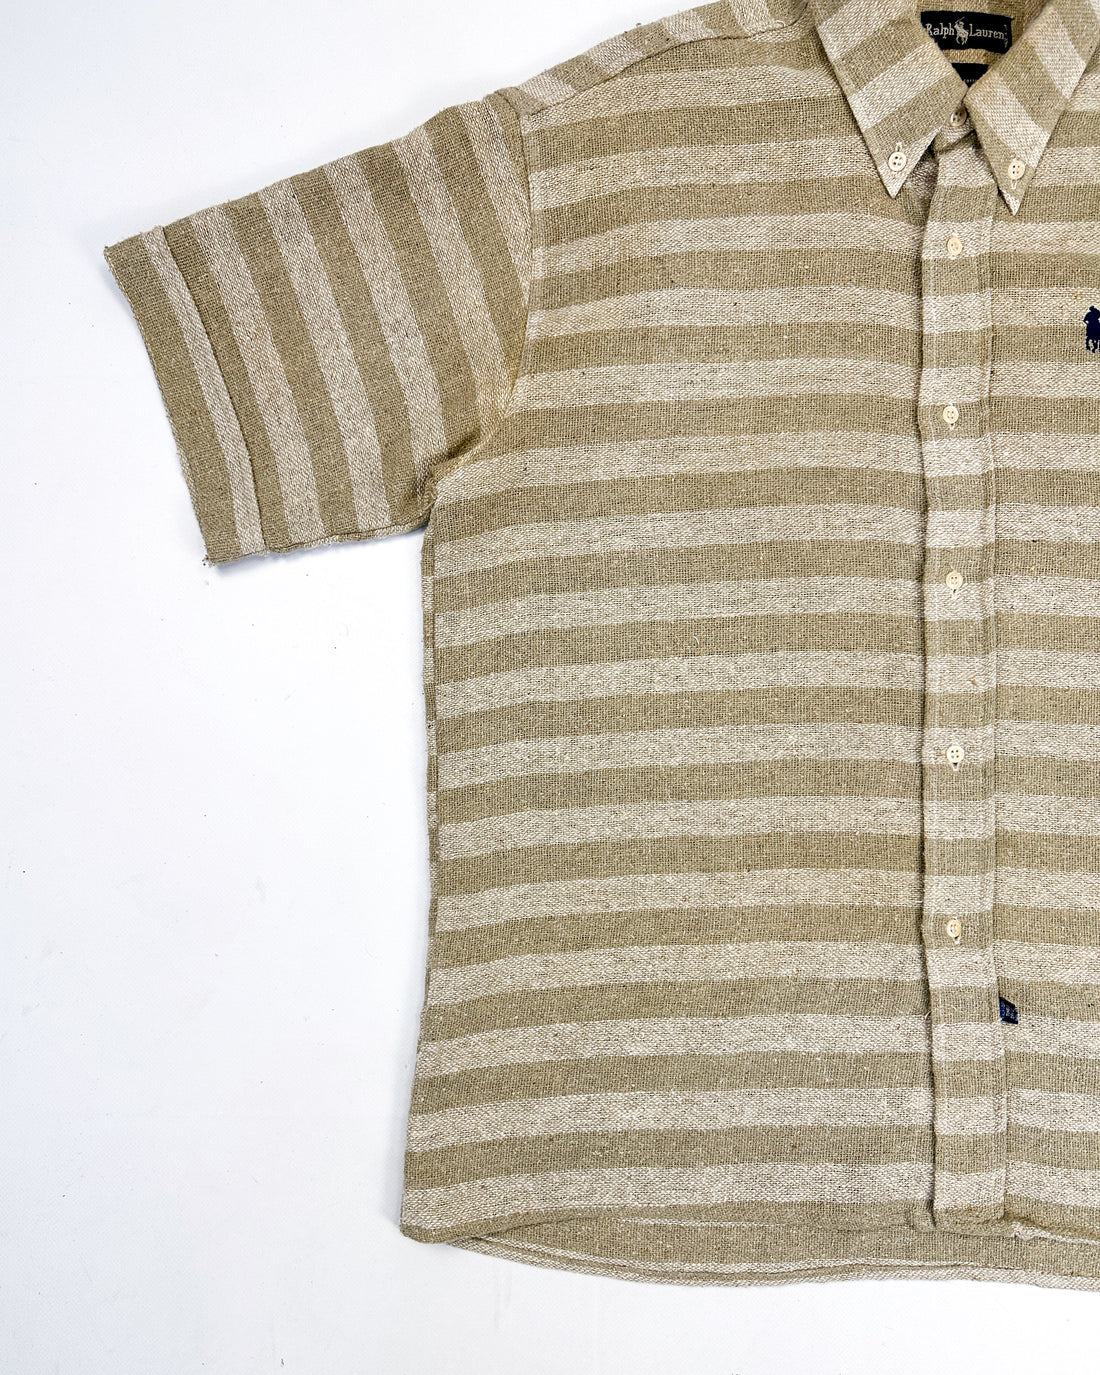 Polo Ralph Lauren Hemp Cotton Made in USA Shirt 1990's